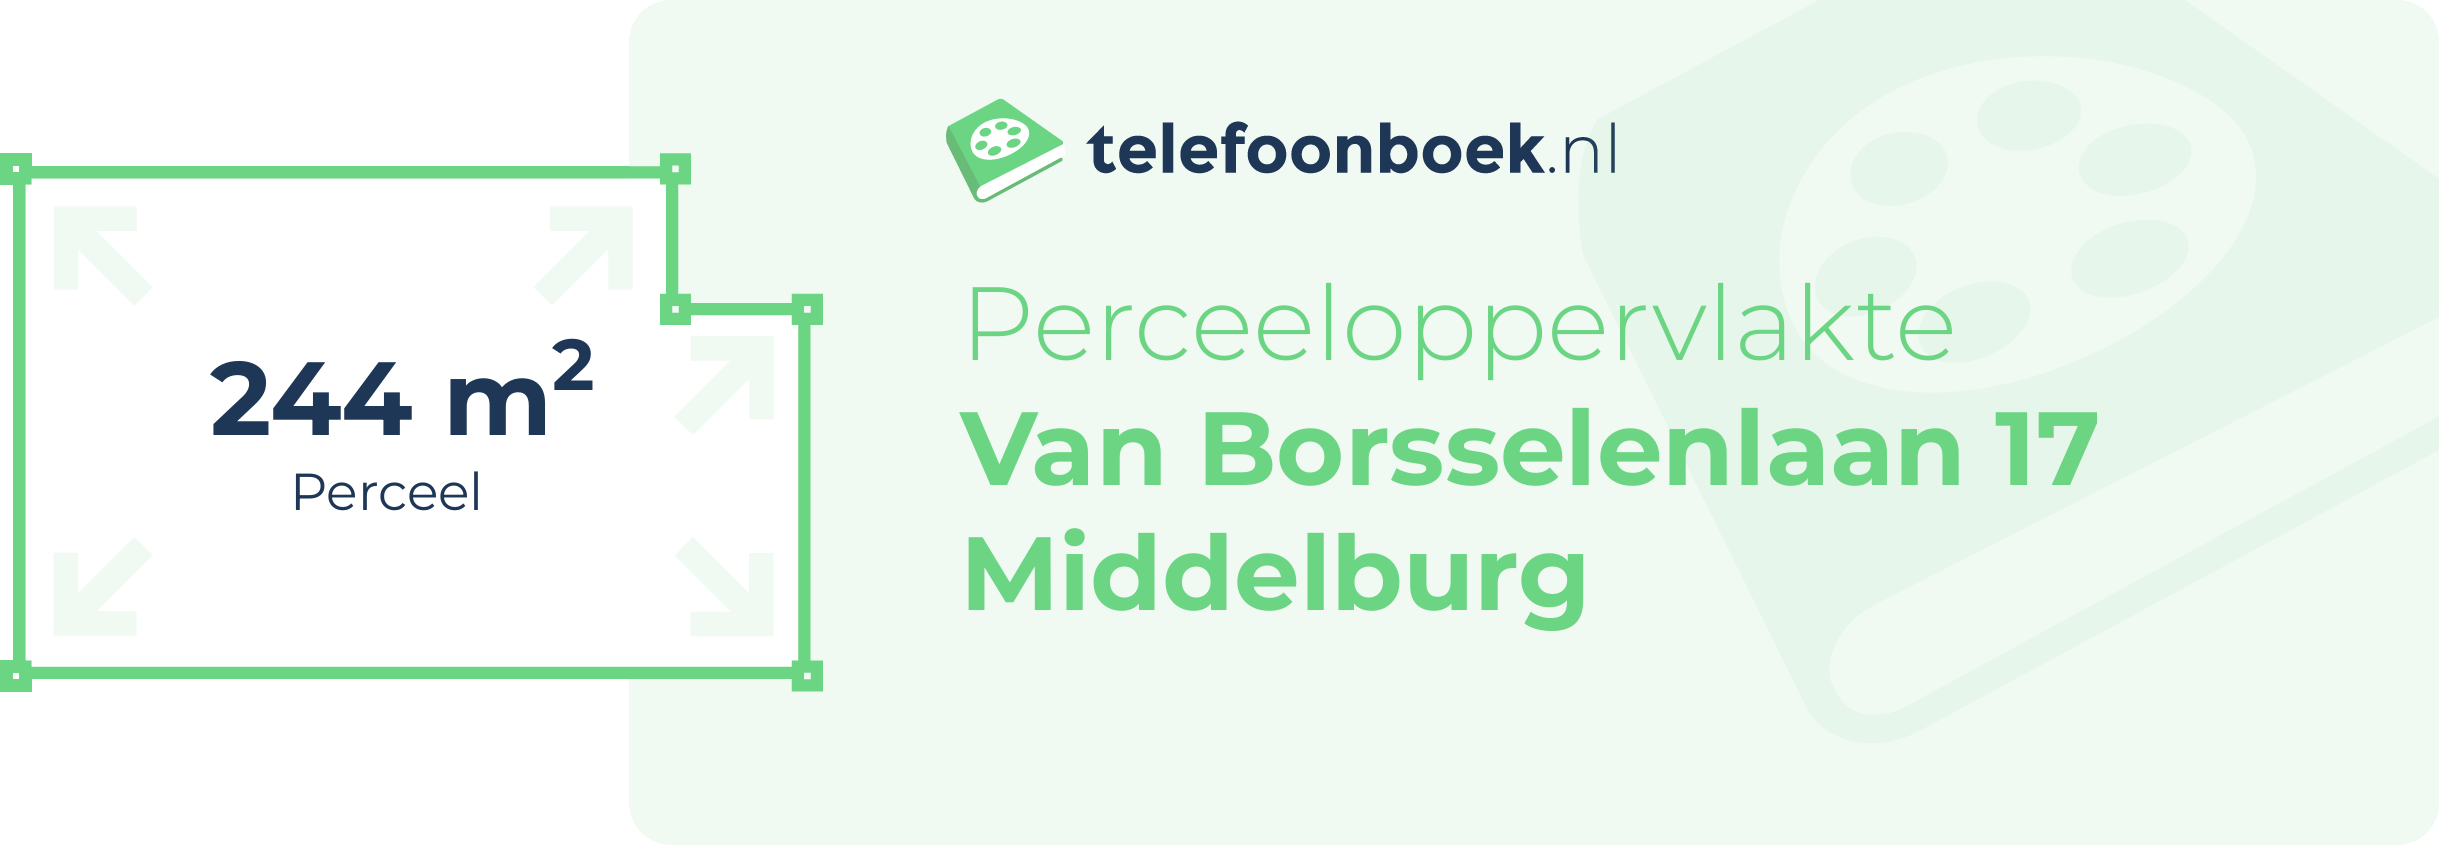 Perceeloppervlakte Van Borsselenlaan 17 Middelburg